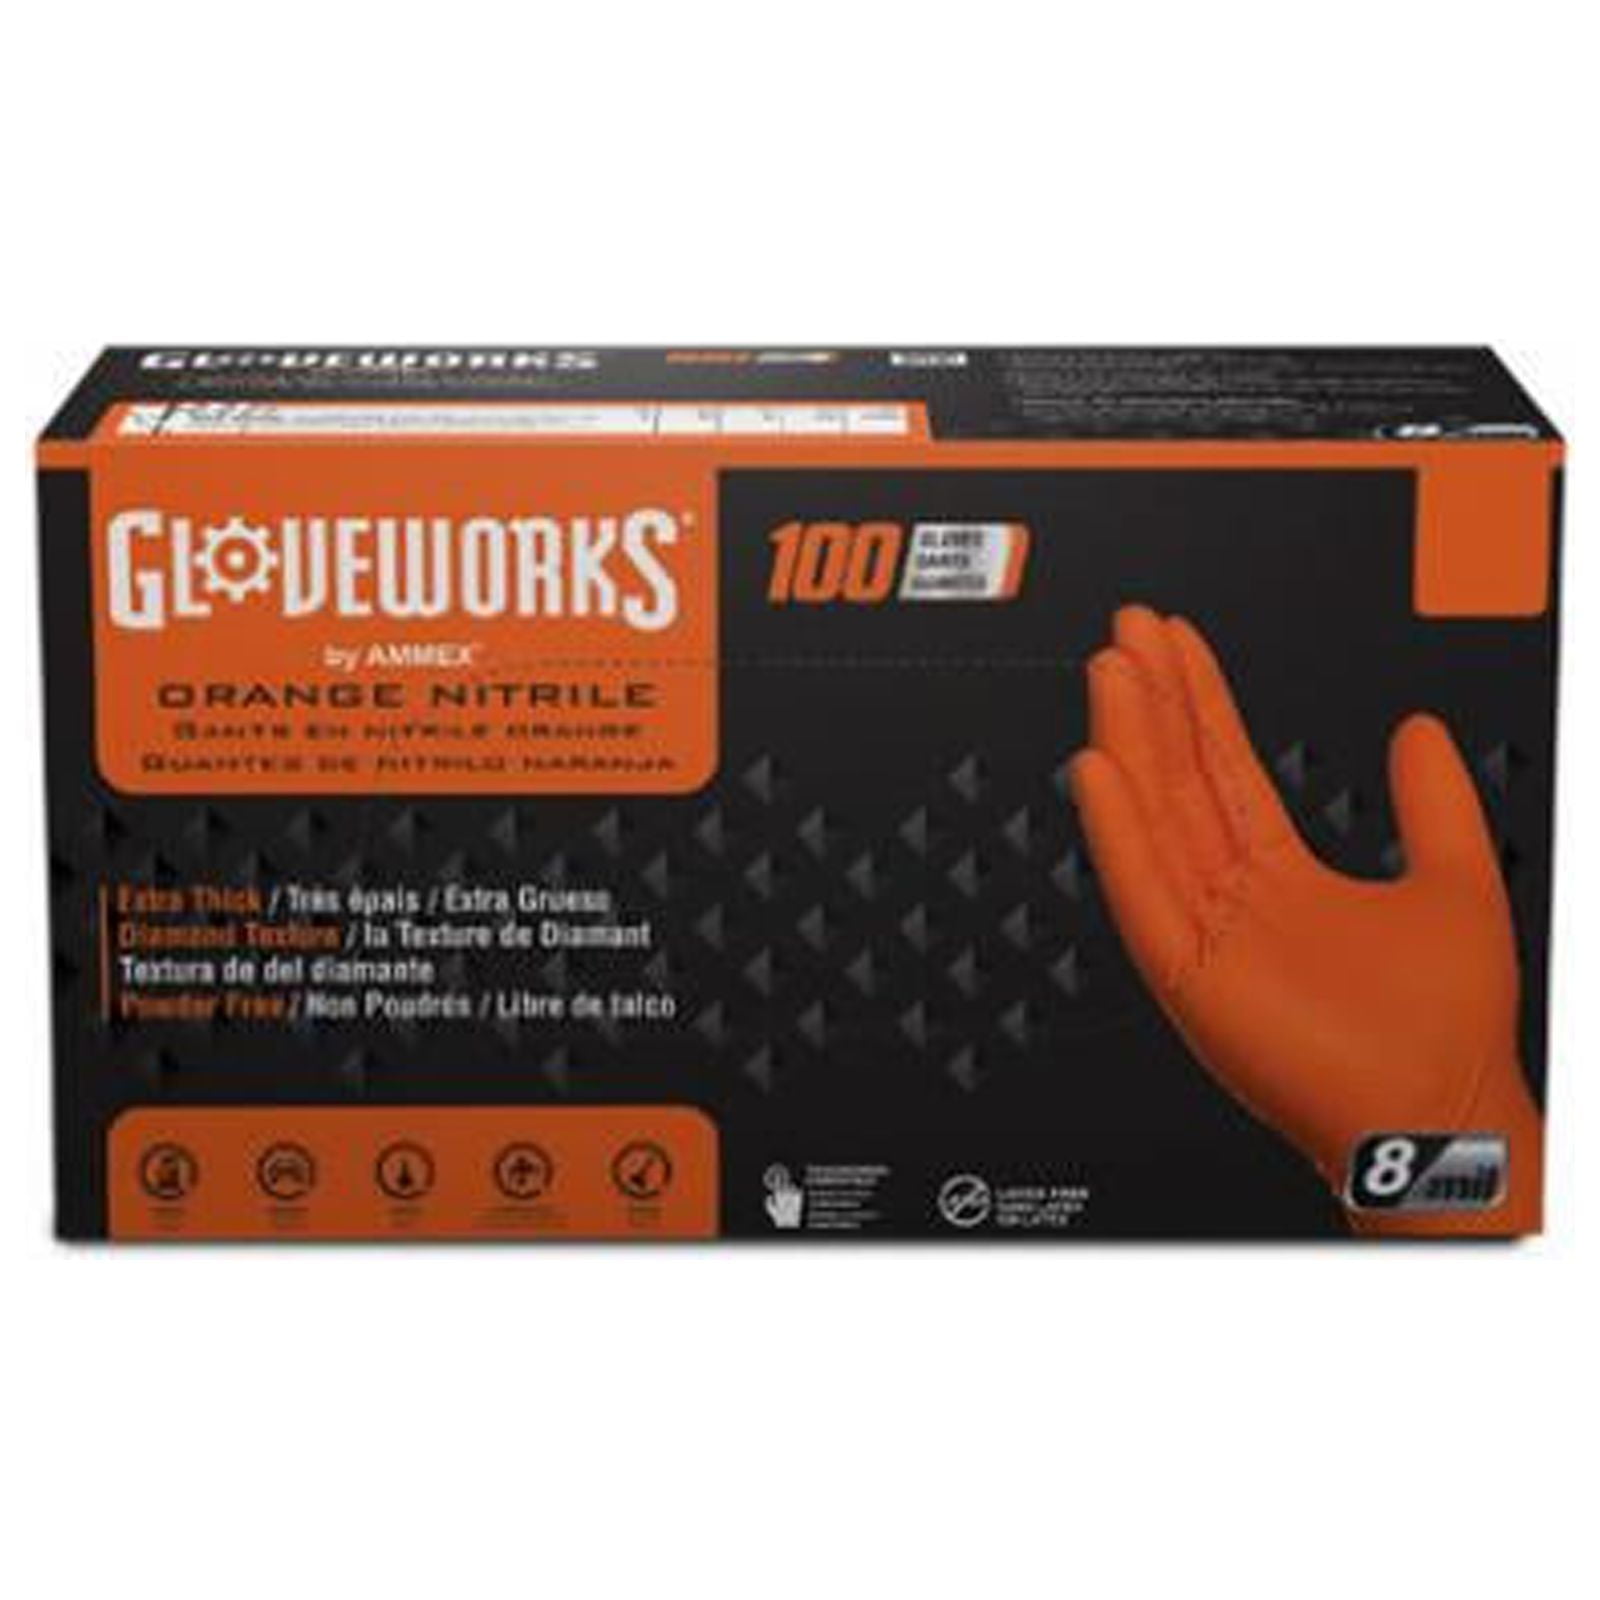 Categories :: Gloves - Disposable :: Gloveworks HD Orange Nitrile